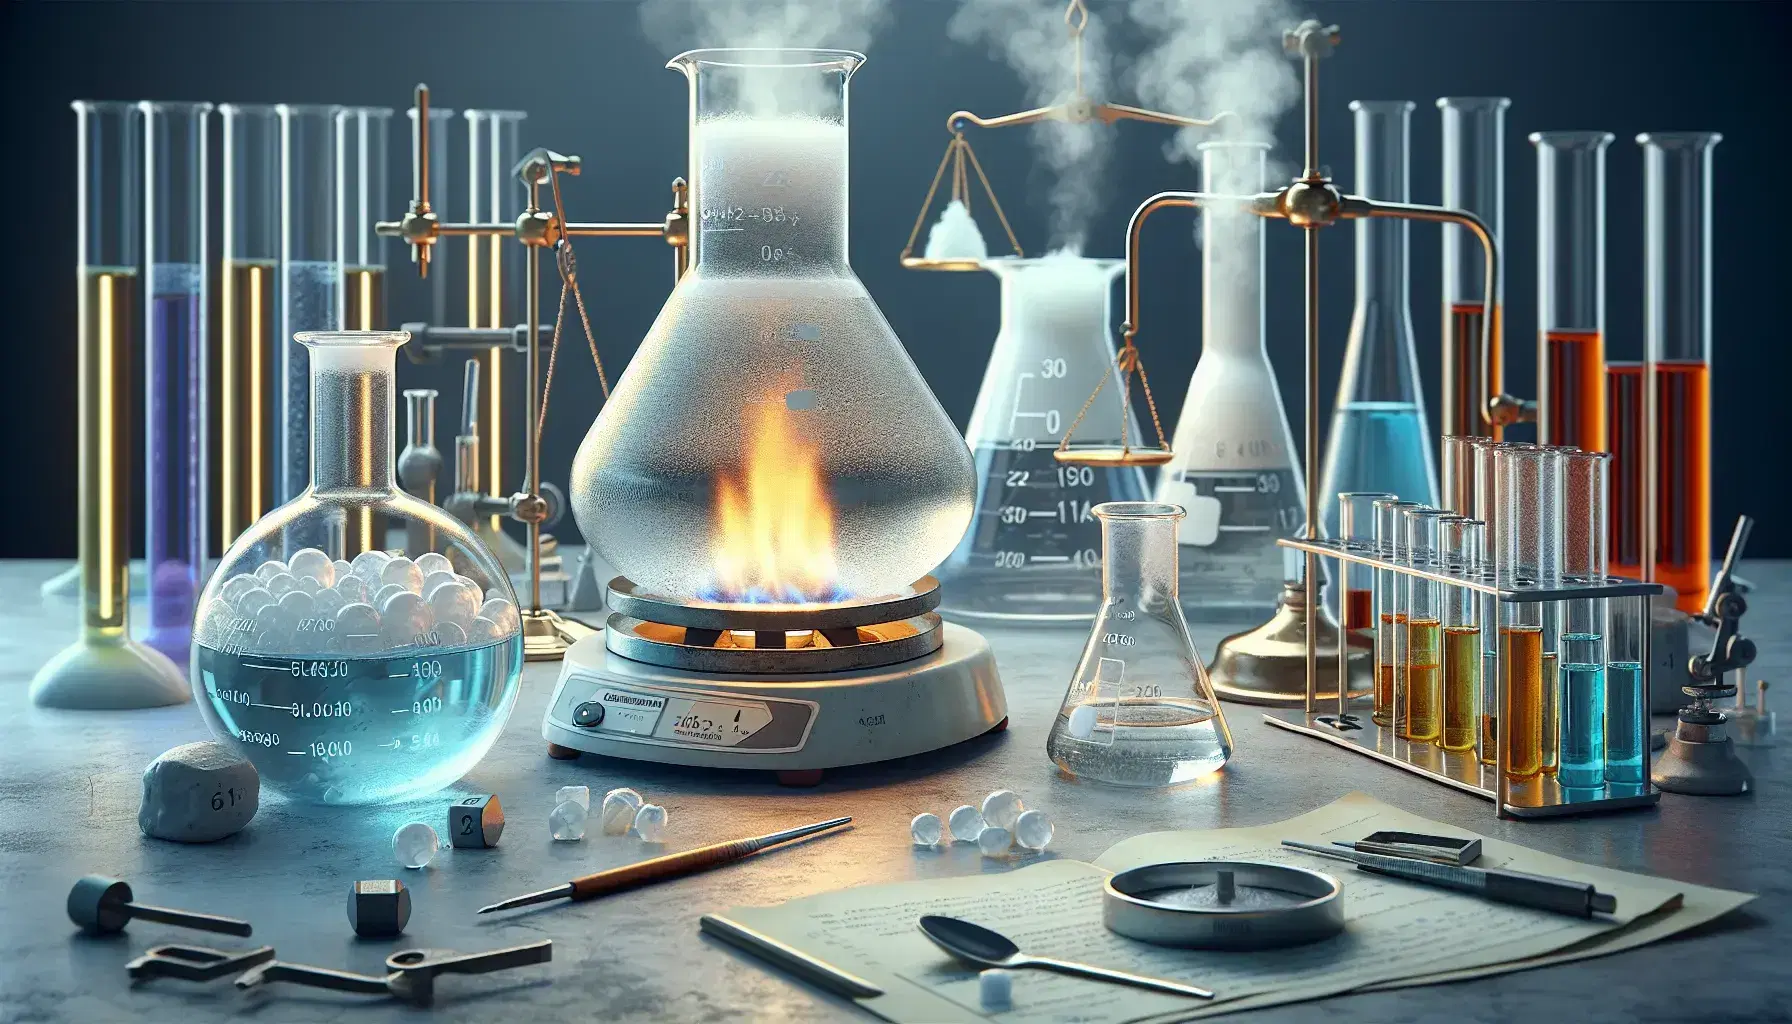 Laboratorio de química con matraz Erlenmeyer, líquido hirviendo en vaso sobre mechero Bunsen, tubo de ensayo con sólido blanco, balanza analítica y cilindros graduados con líquidos de colores.